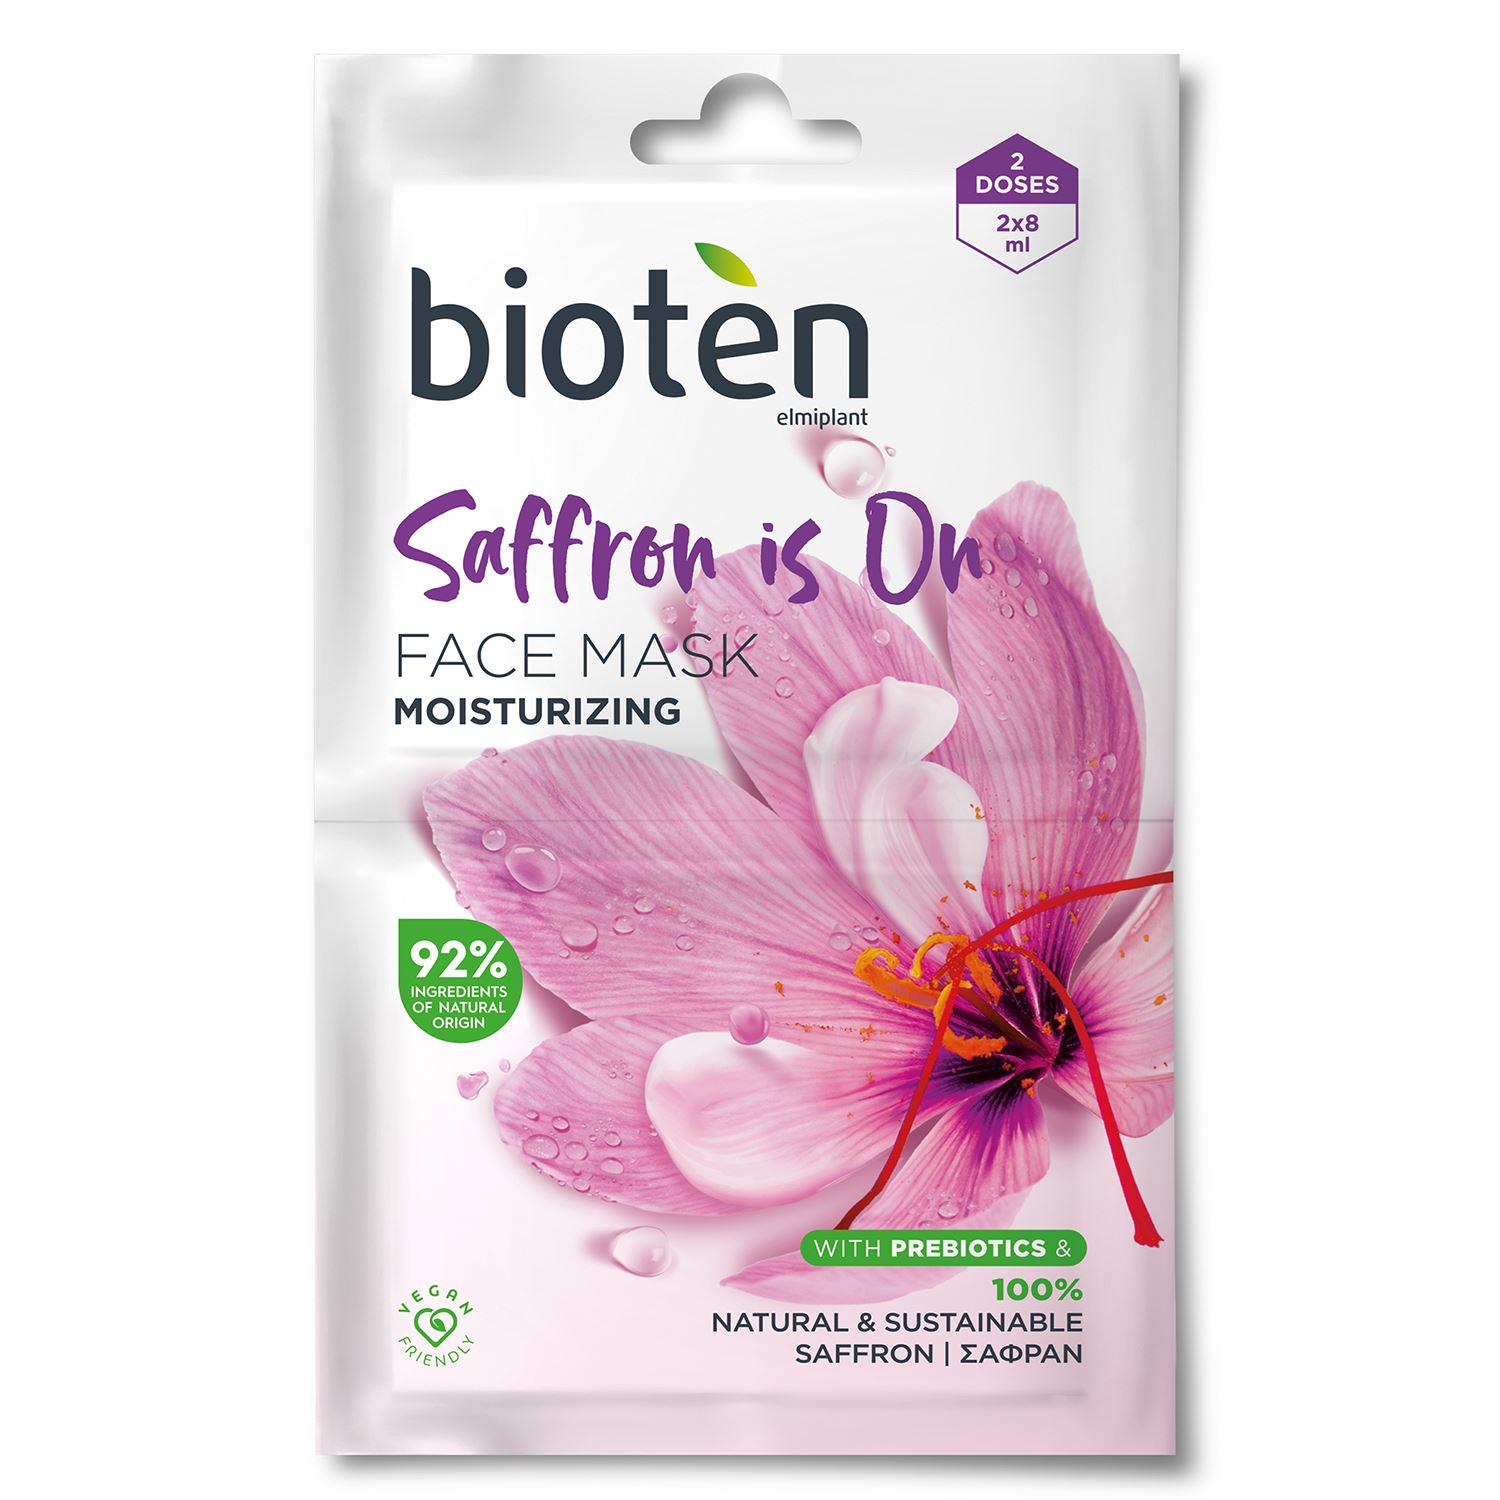 Bioten Saffron Is On Moisturizing Face Mask 2x8ml | Harmanis